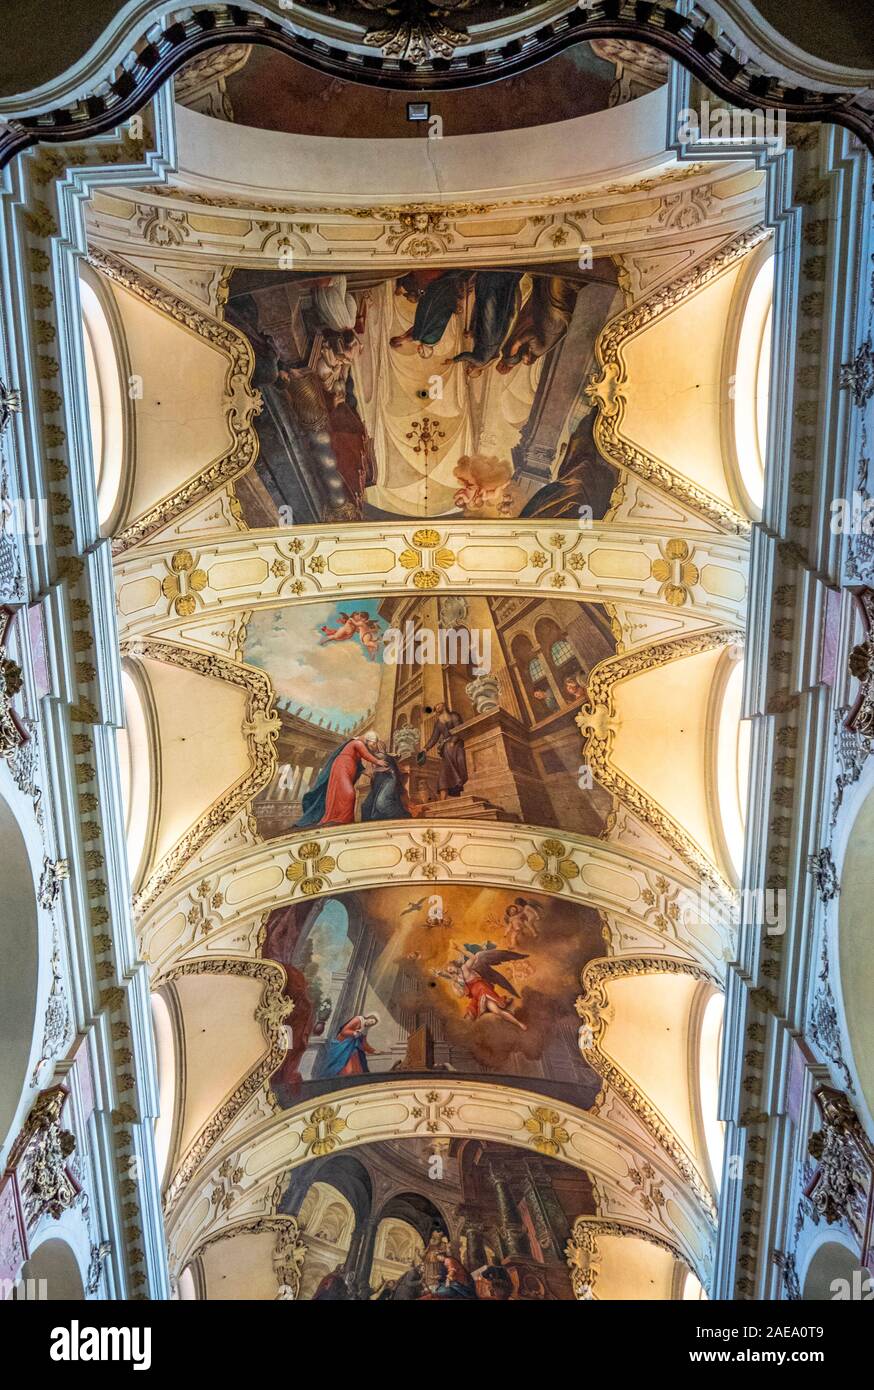 Plafond peint représentant des scènes religieuses dans la basilique de la vieille ville de Saint-Jacques Prague République tchèque. Banque D'Images